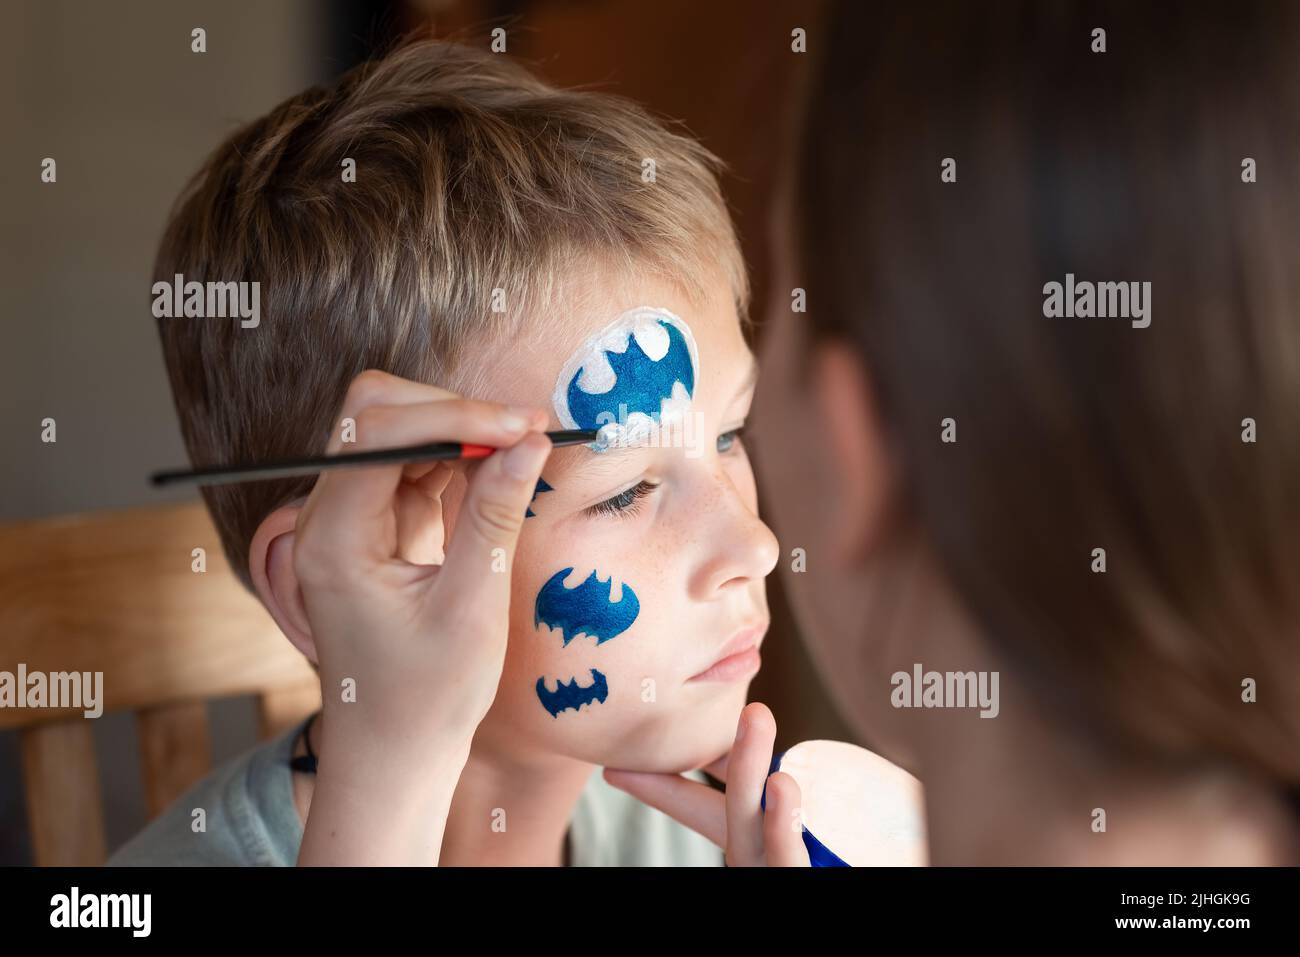 Niño con máscara de batman fotografías e imágenes de alta resolución - Alamy